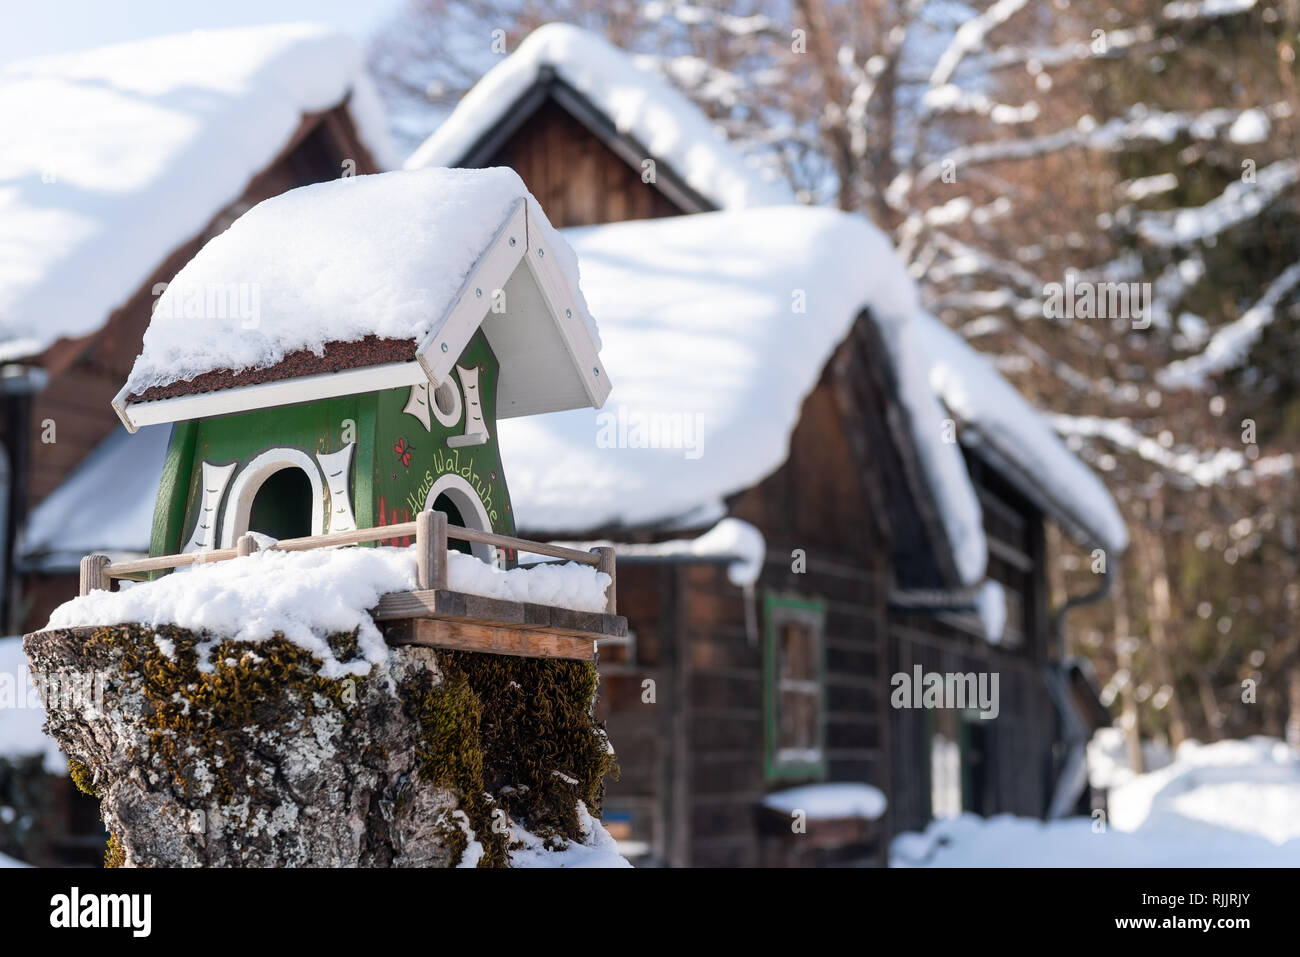 Home-made de l'oiseau en bois convoyeur en hiver, sous la neige. Banque D'Images